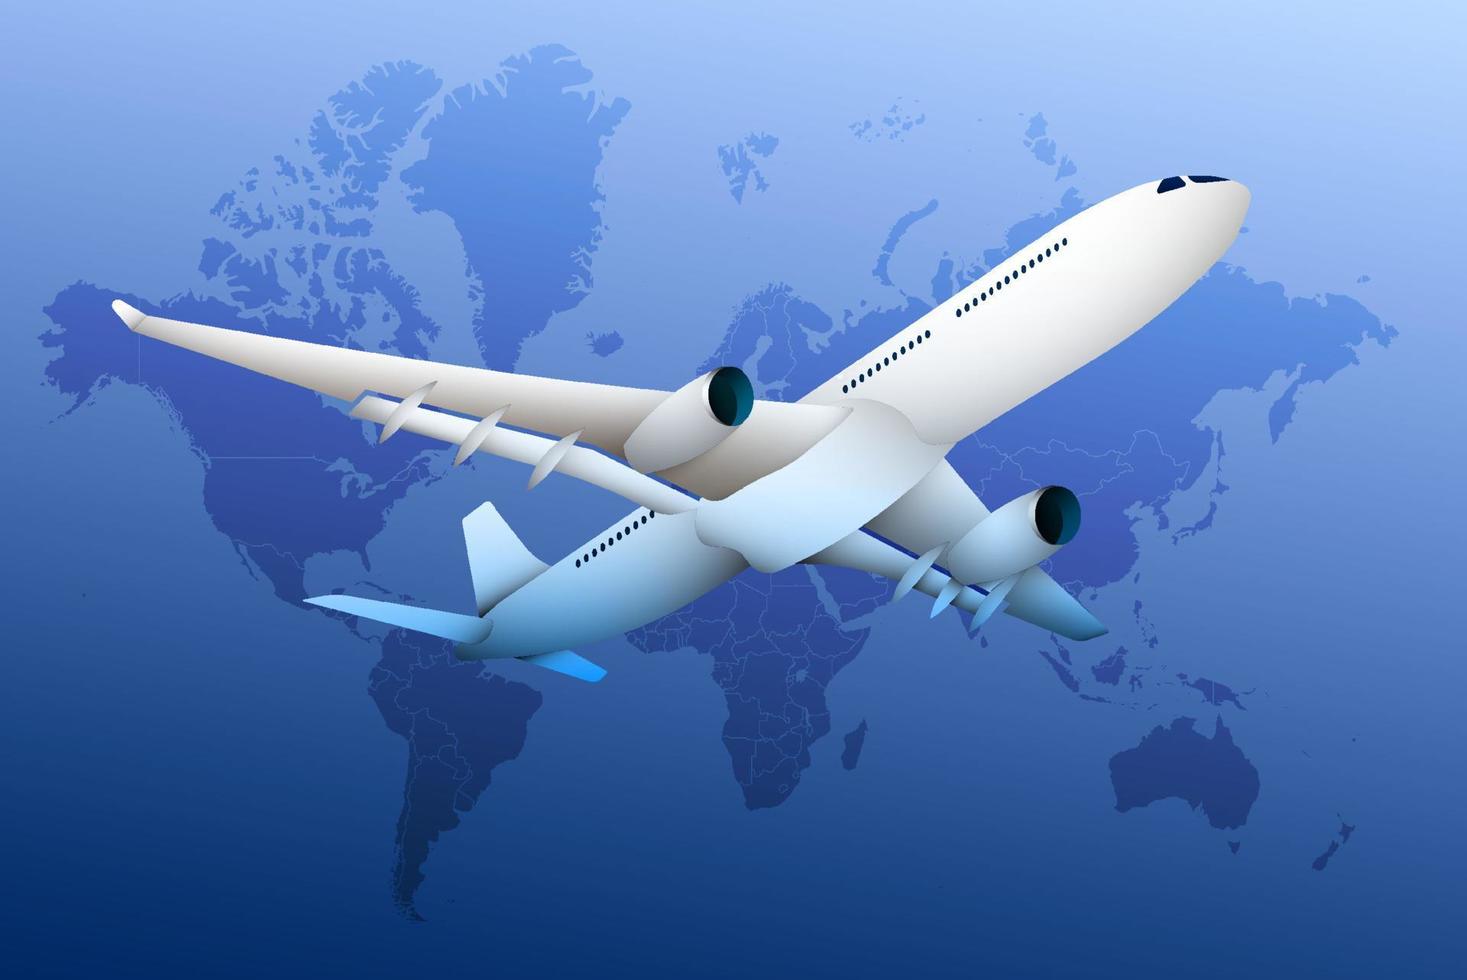 avião, avião realista no fundo dos continentes e continentes do globo. viagens e voos internacionais. turismo. vetor de cores